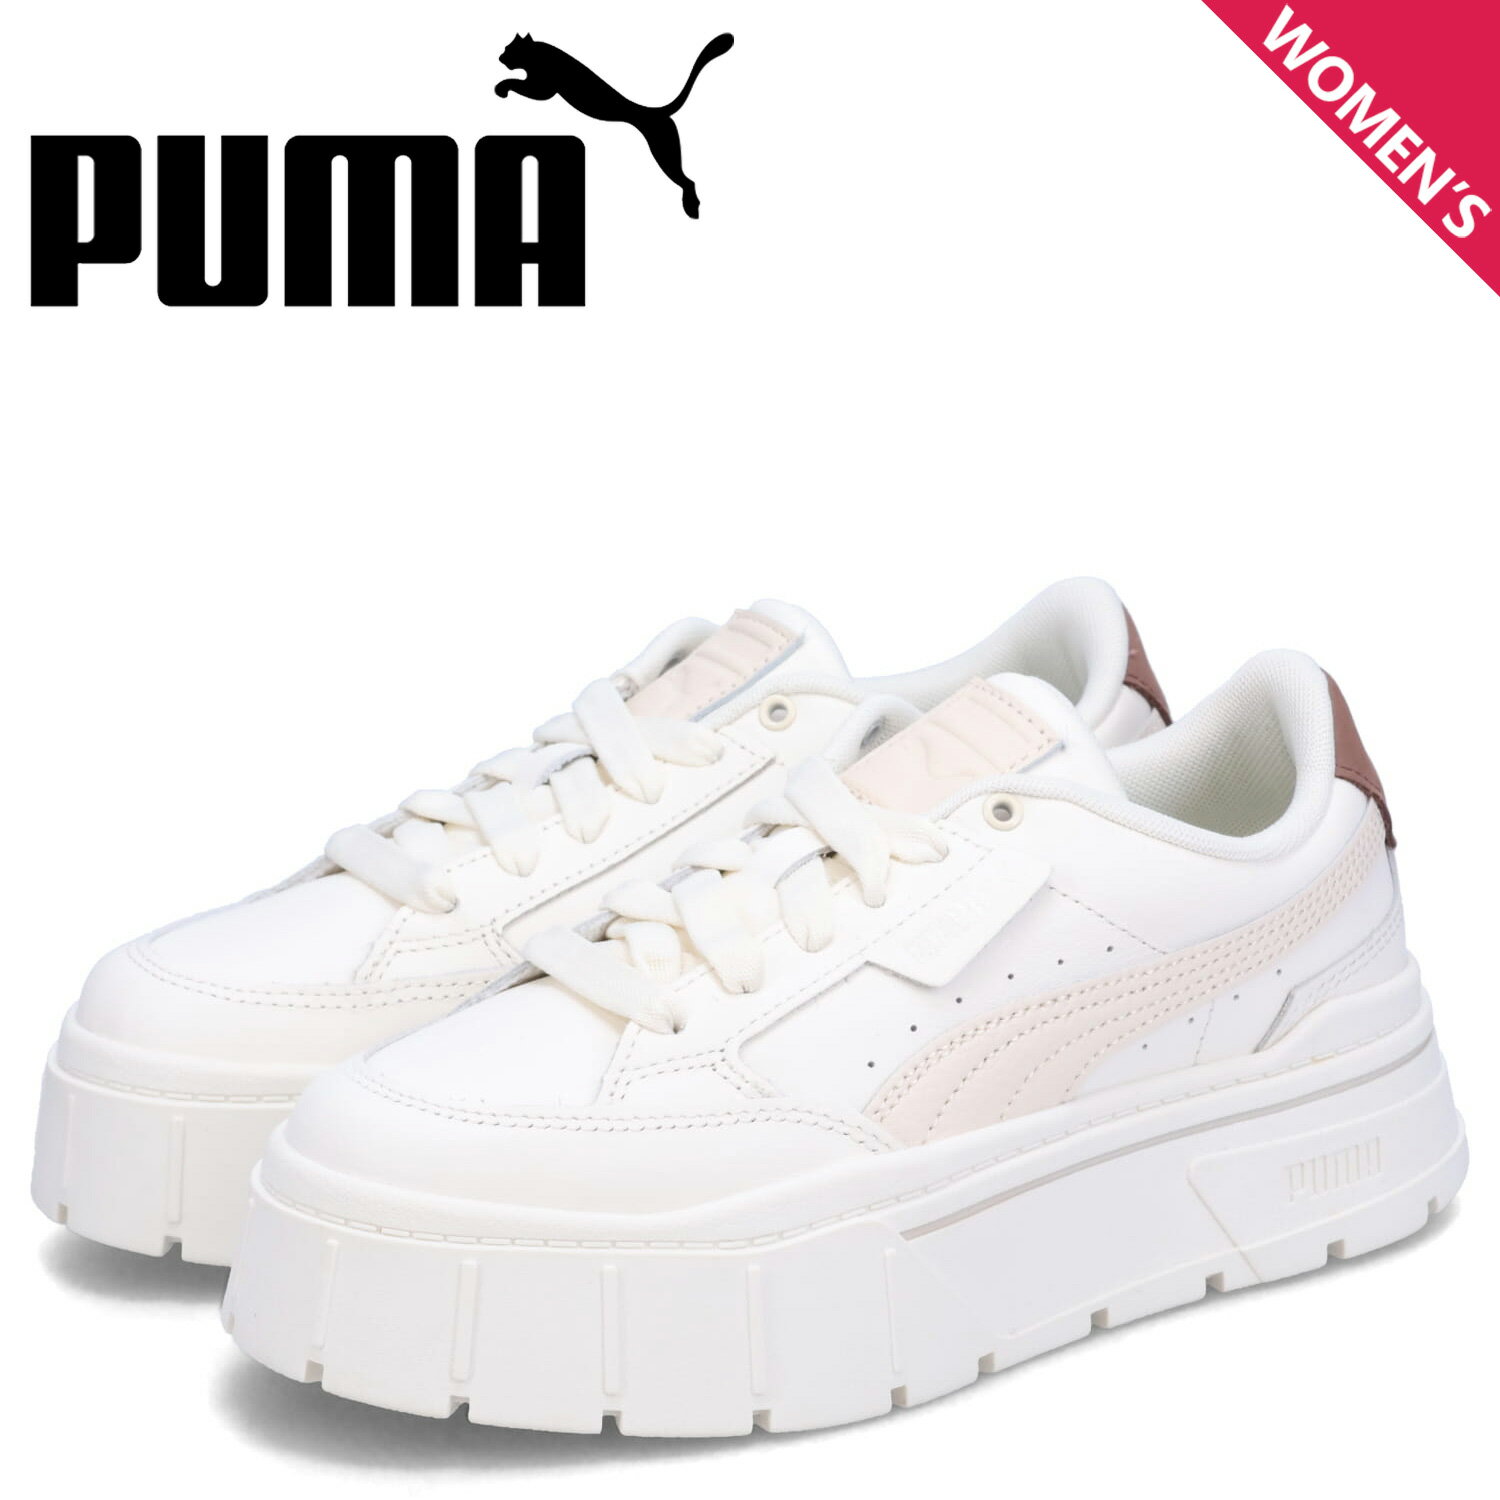 プーマ PUMA スニーカー メイズ スタック ソフト ウィメンズ レディース 厚底 MAYZE STACK SOFT WMNS ホワイト 白 391083-05